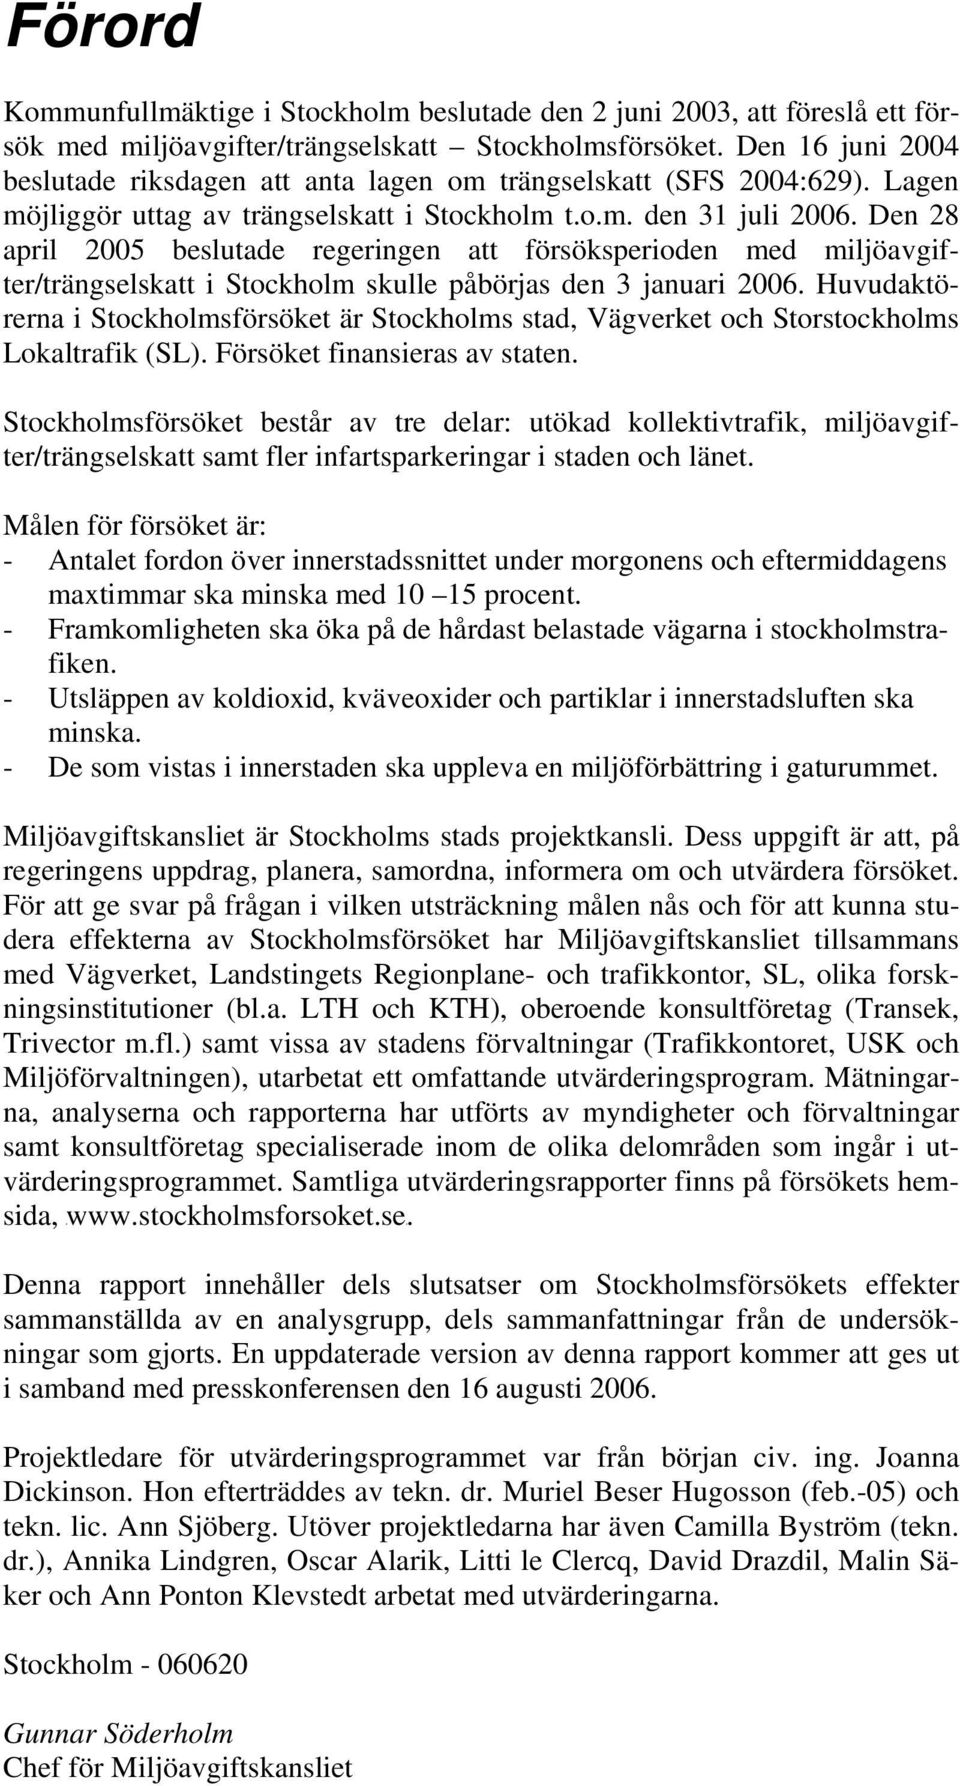 Den 28 april 2005 beslutade regeringen att försöksperioden med miljöavgifter/trängselskatt i Stockholm skulle påbörjas den 3 januari 2006.